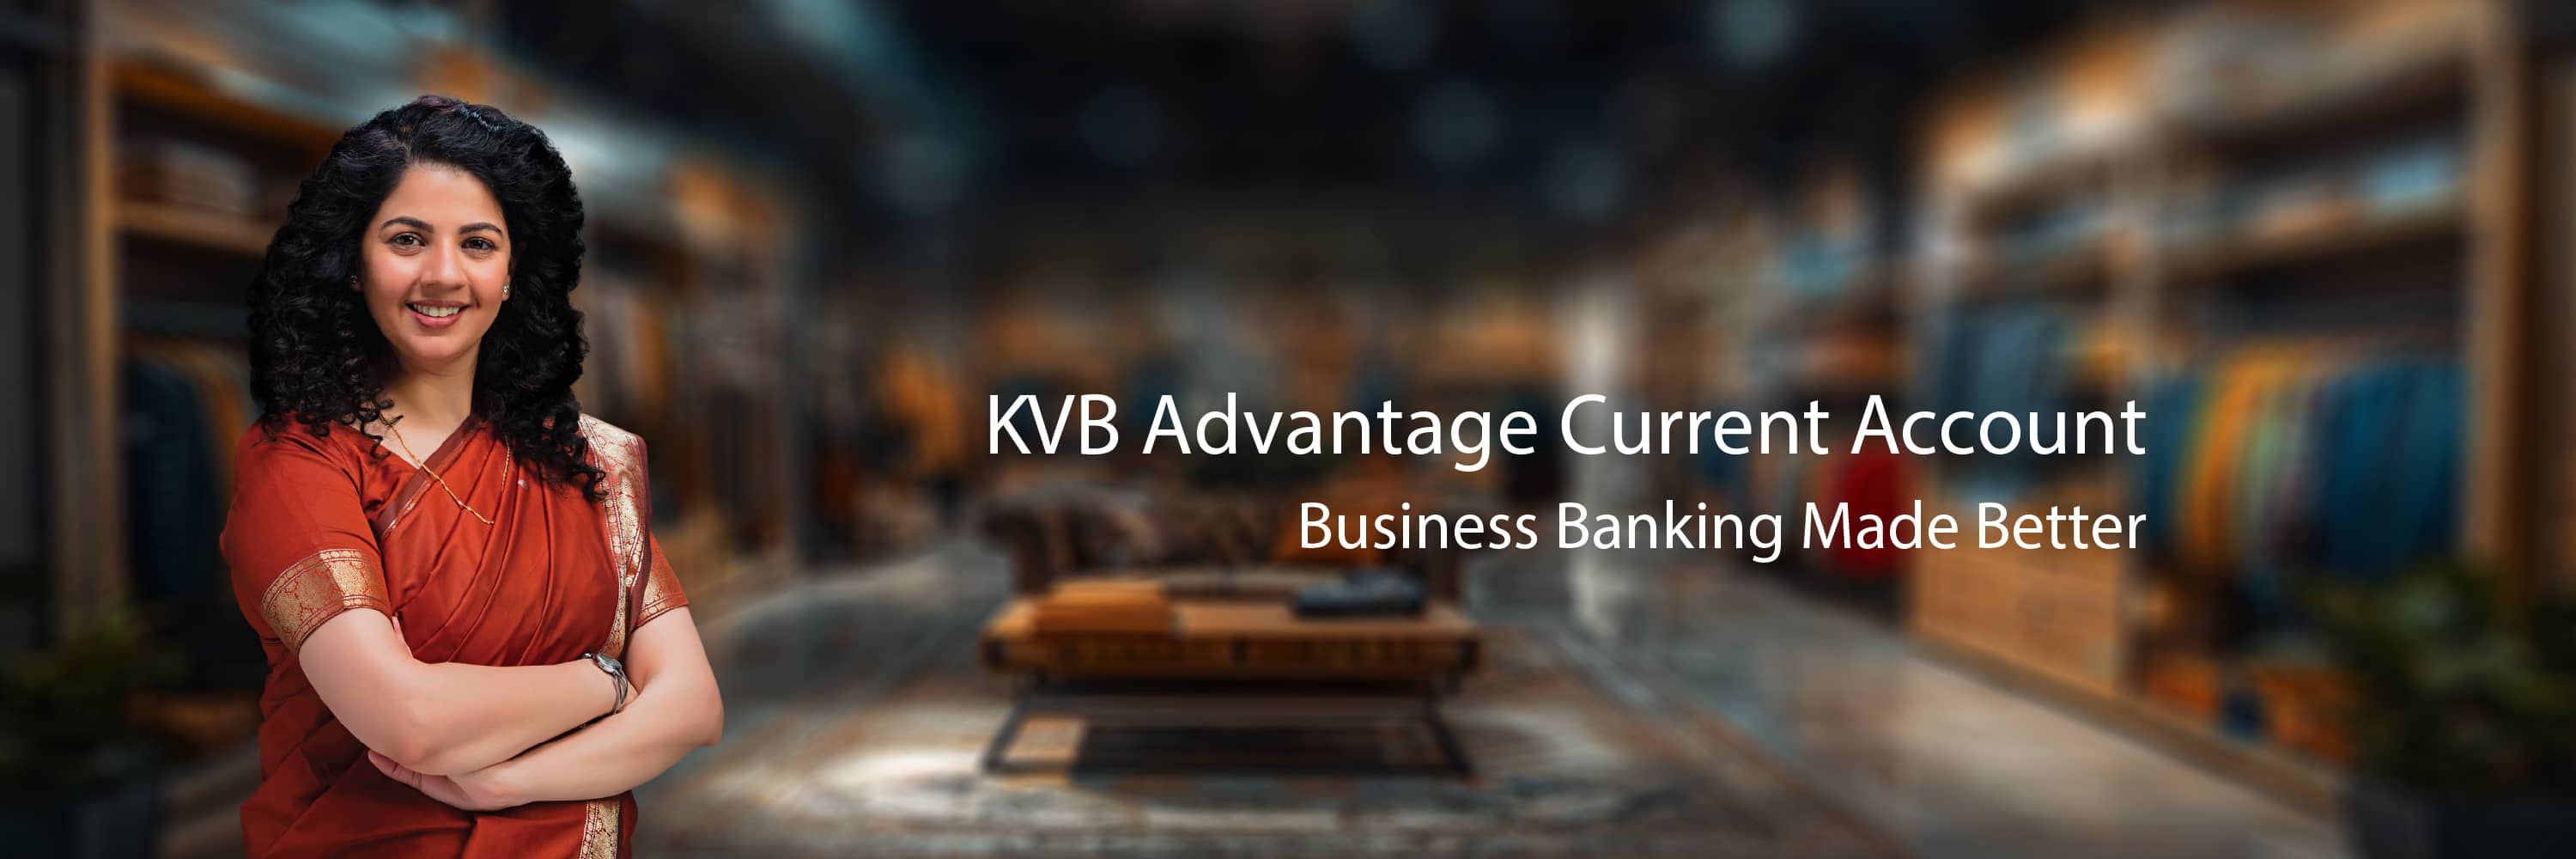 KVB Advantage Current Account